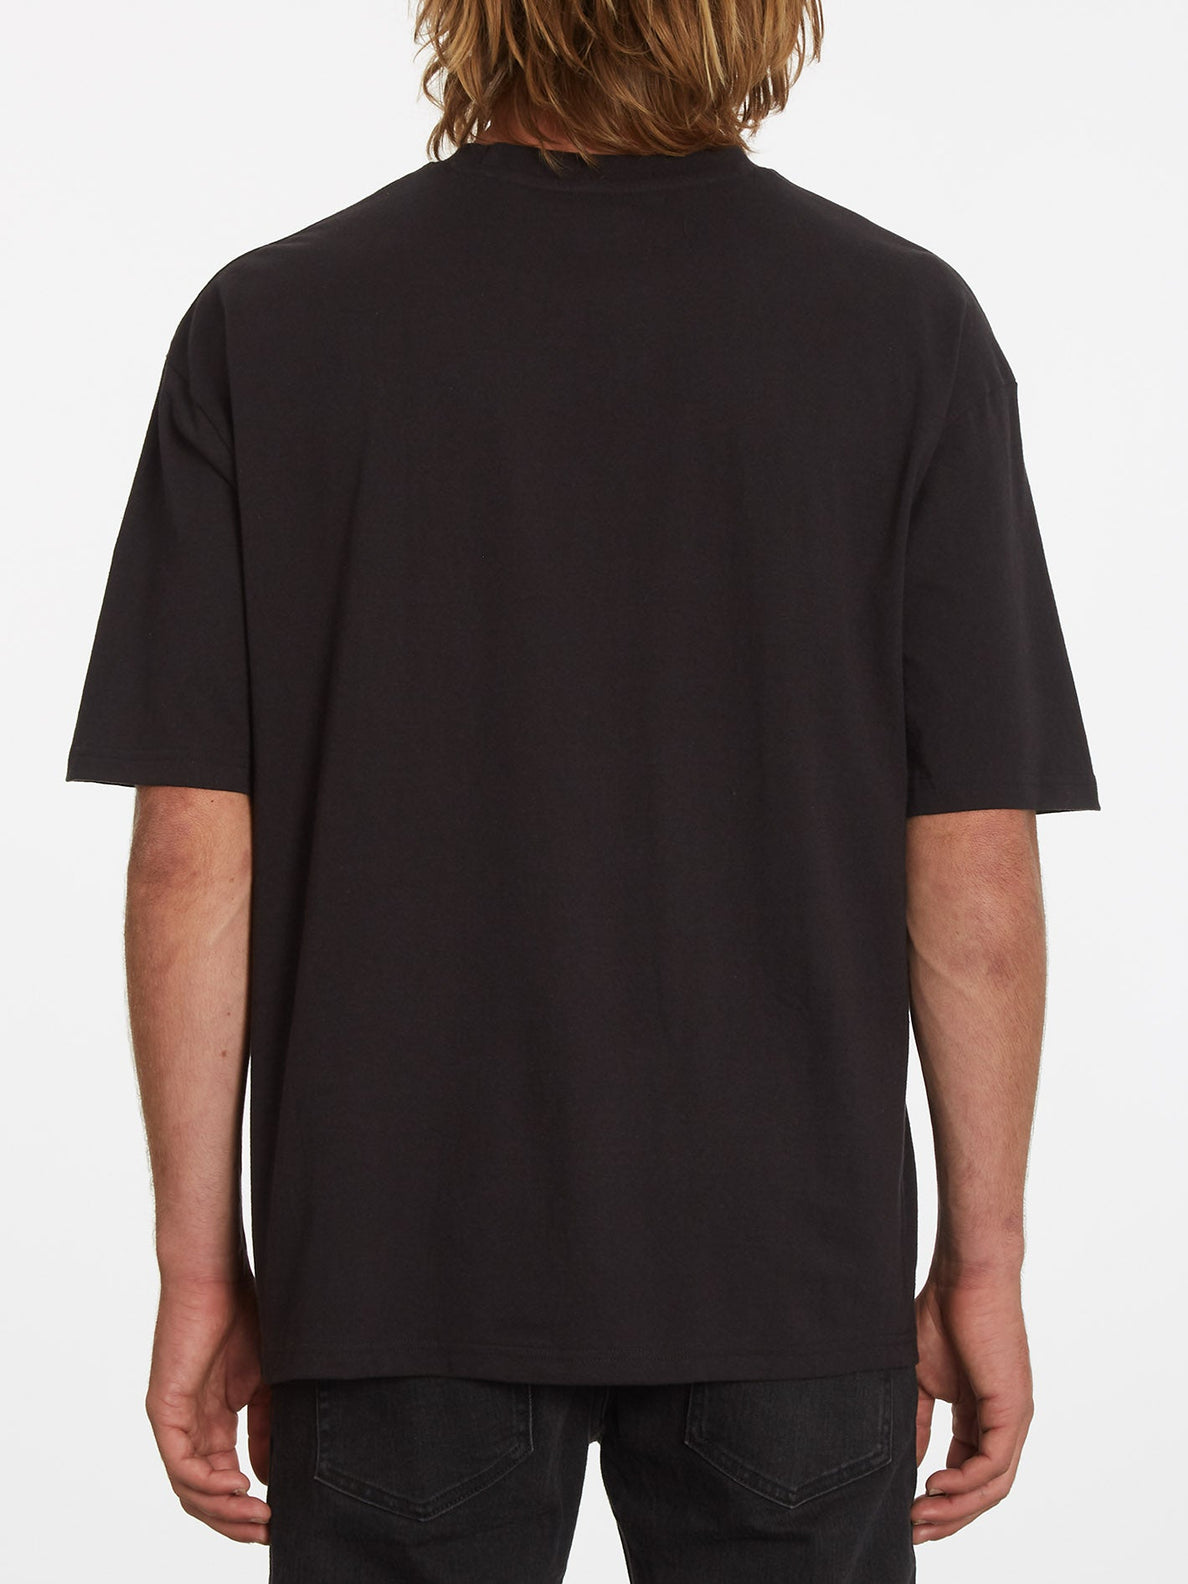 Shredead T-shirt - BLACK (A4332205_BLK) [B]